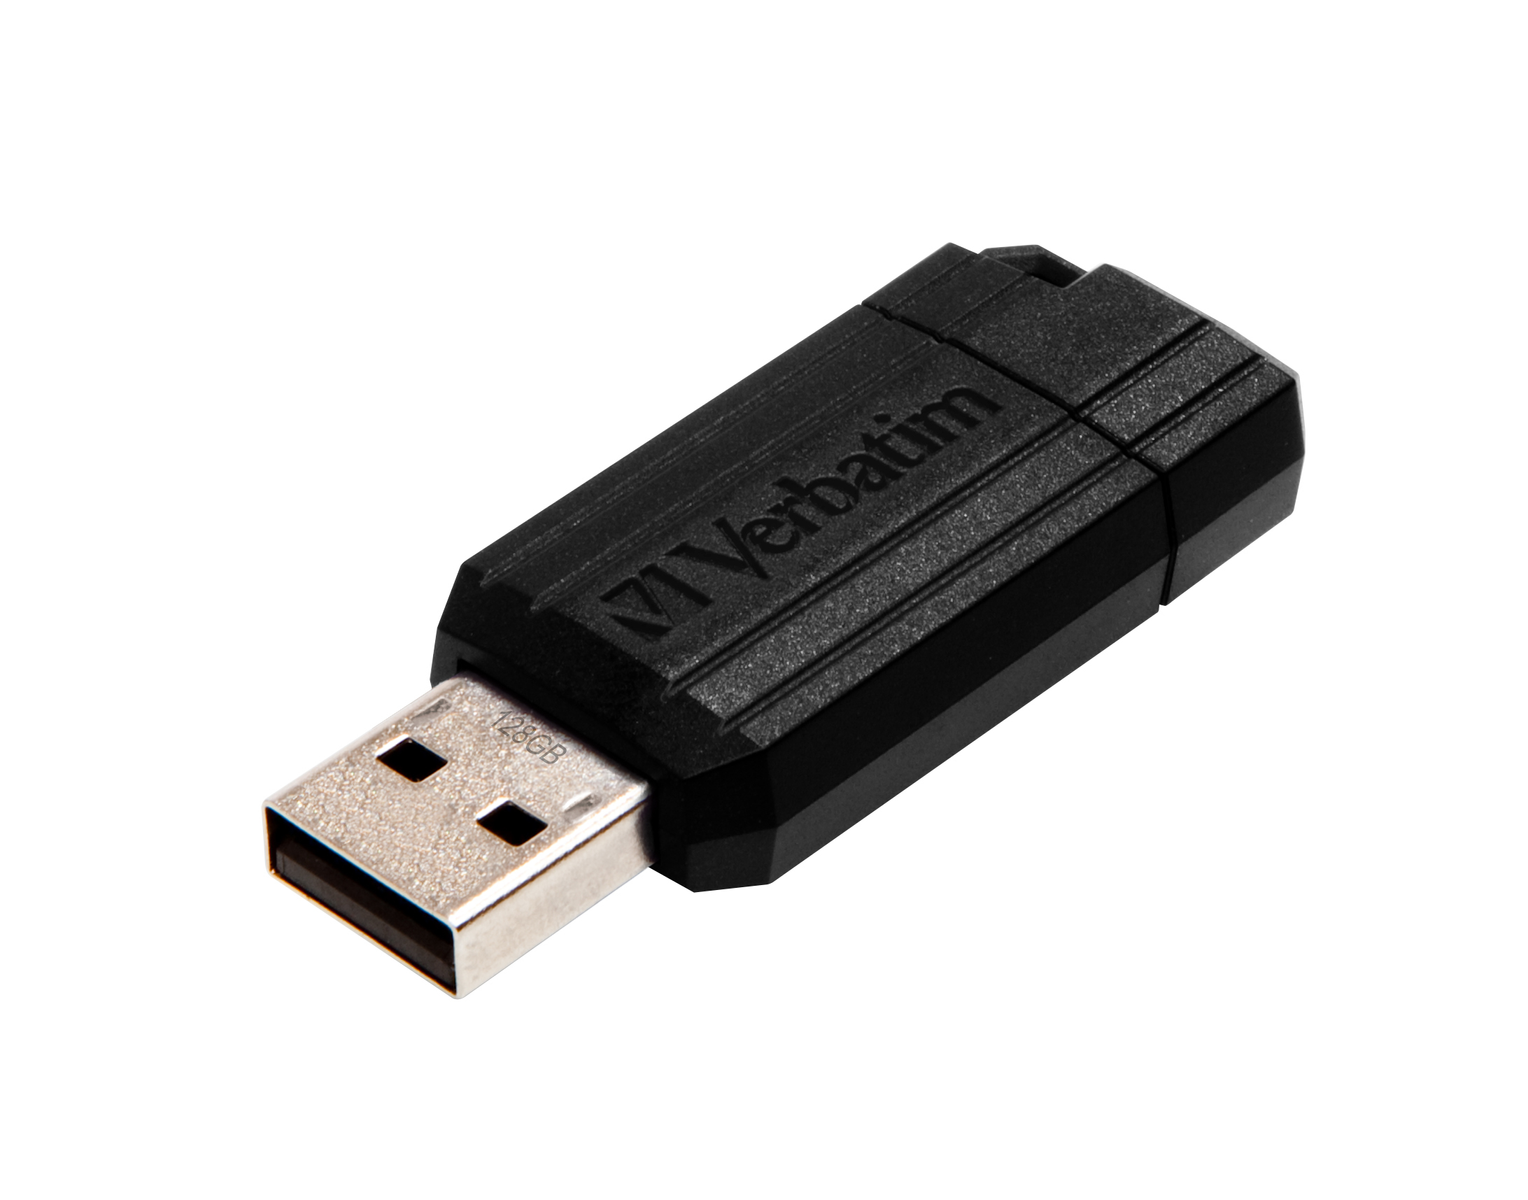 VERBATIM GB) 128 (Schwarz, USB-Massenspeicher 49071